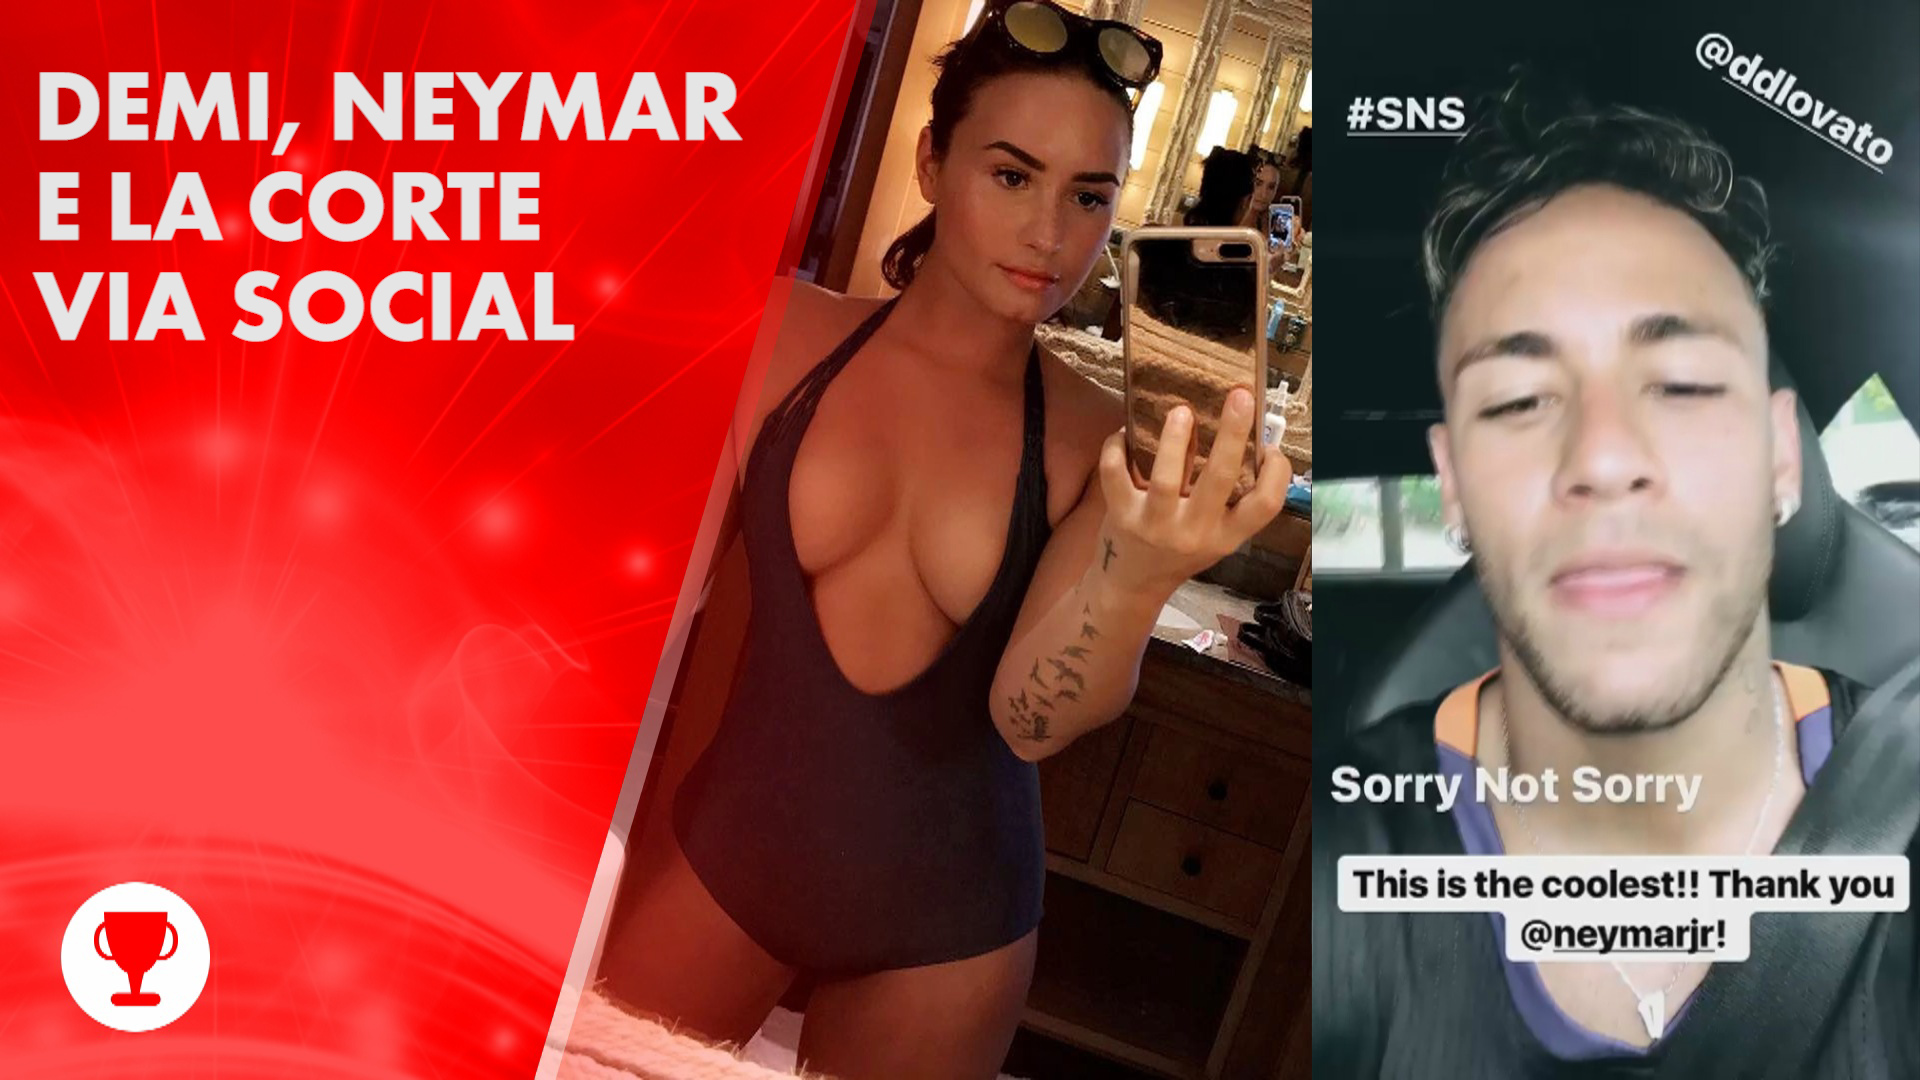 Neymar e Demi: quando la corte corre... sui social!